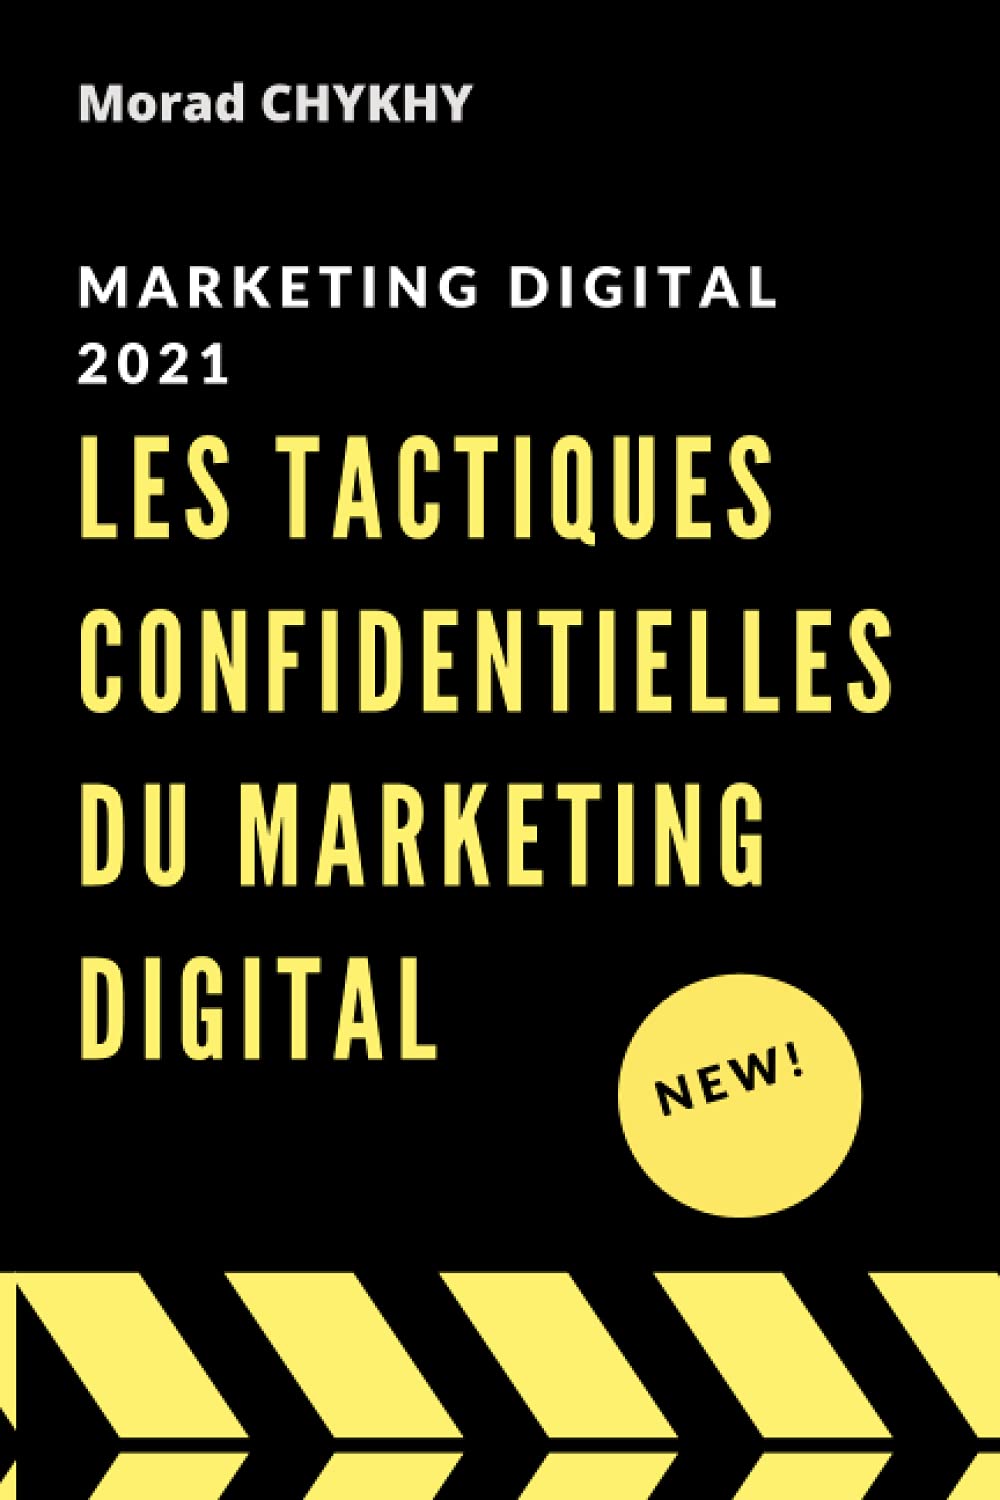 marketing digital 2021: Les tactiques confidentielles du marketing digital pour attirer, convaincre et vendre via internet